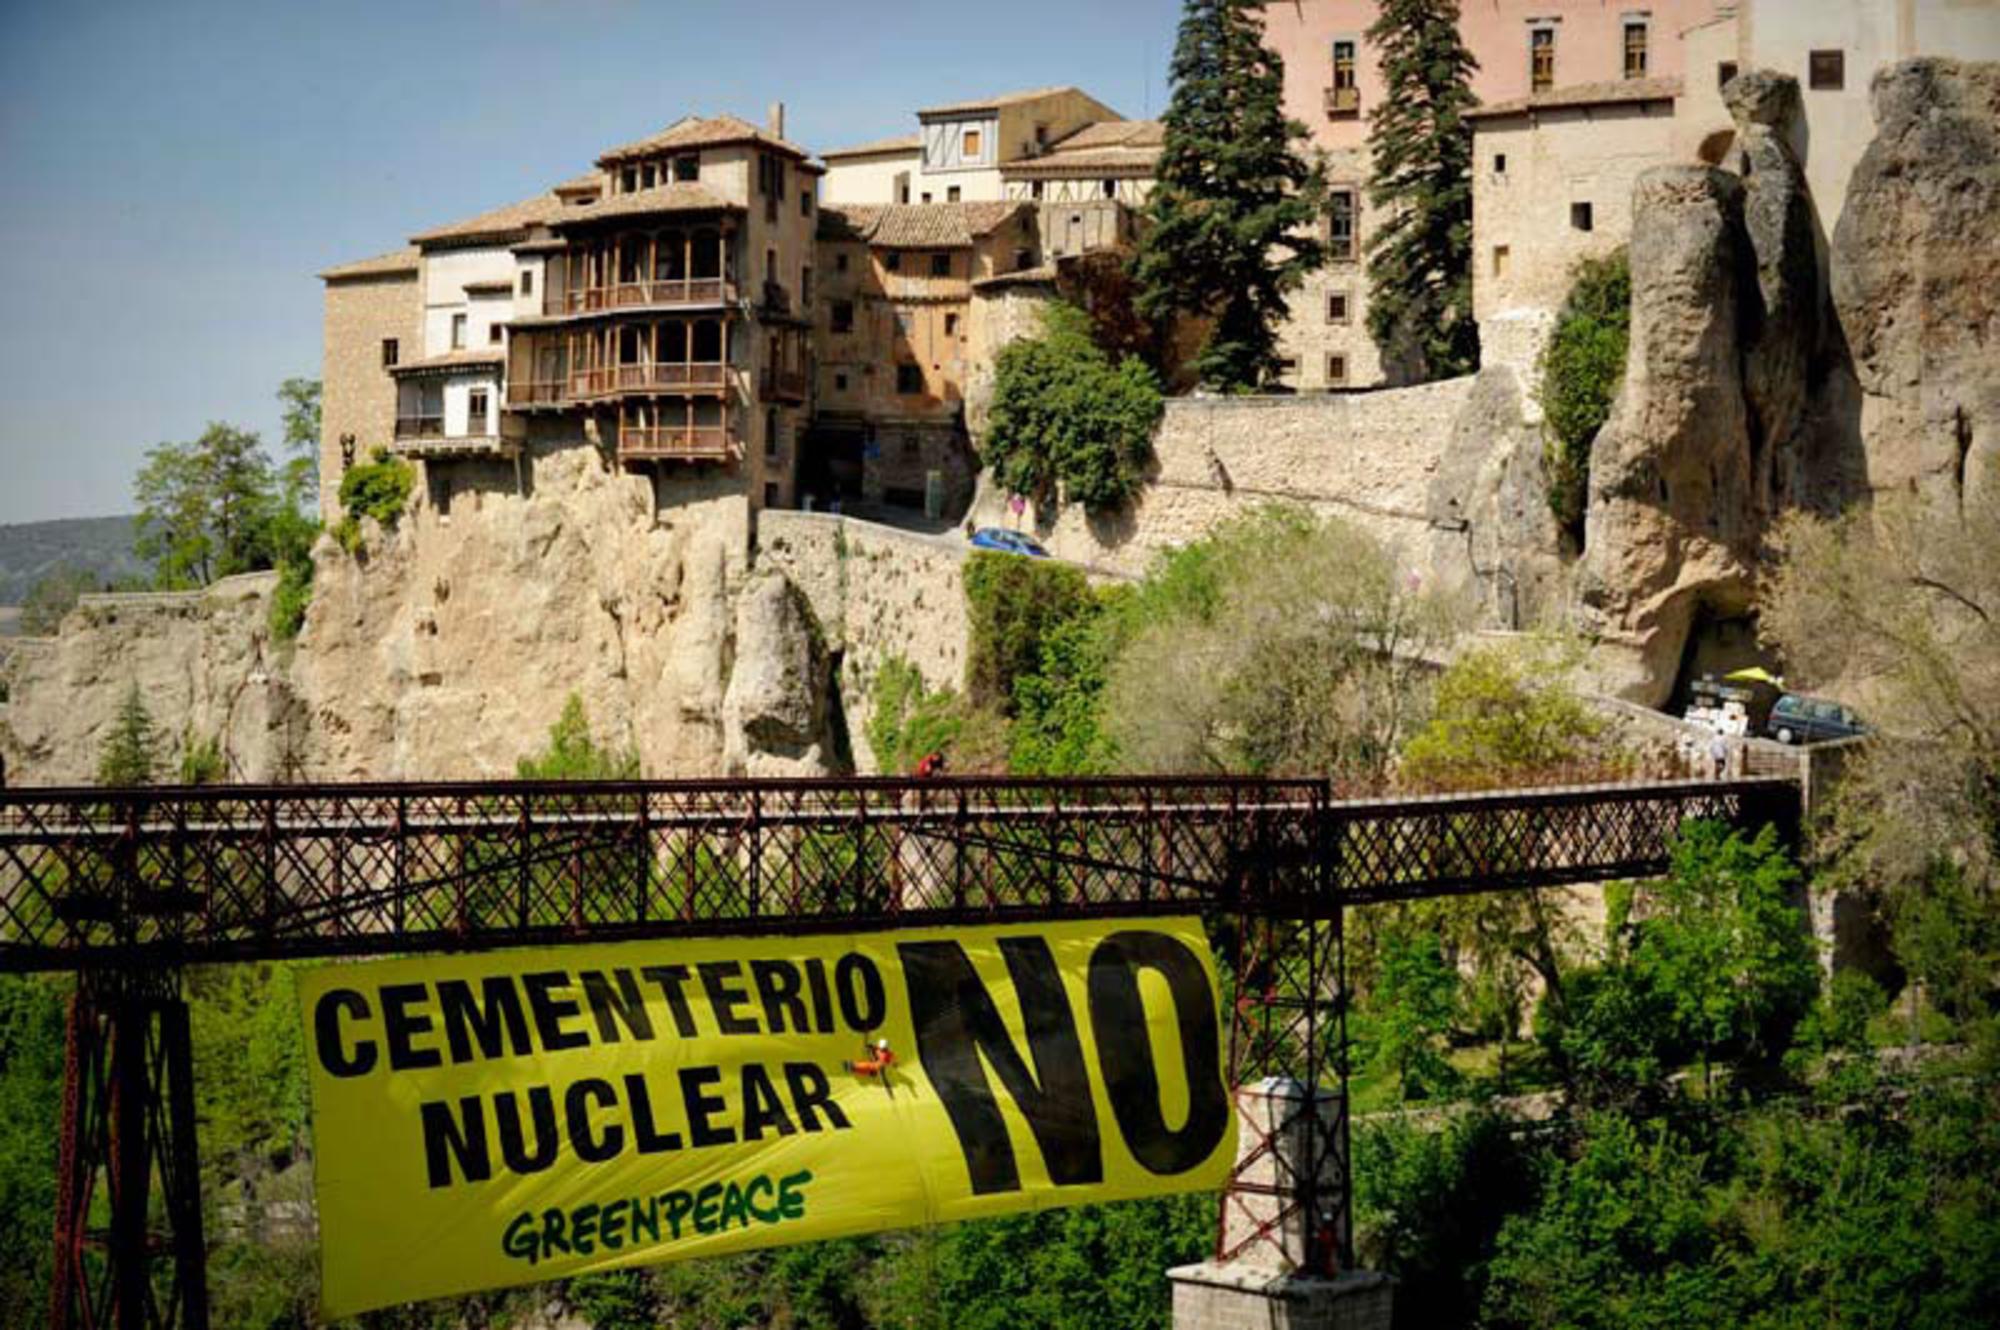 Acción de Greenpeace contra el ATC (Almacén temporal centralizado) en Cuenca.